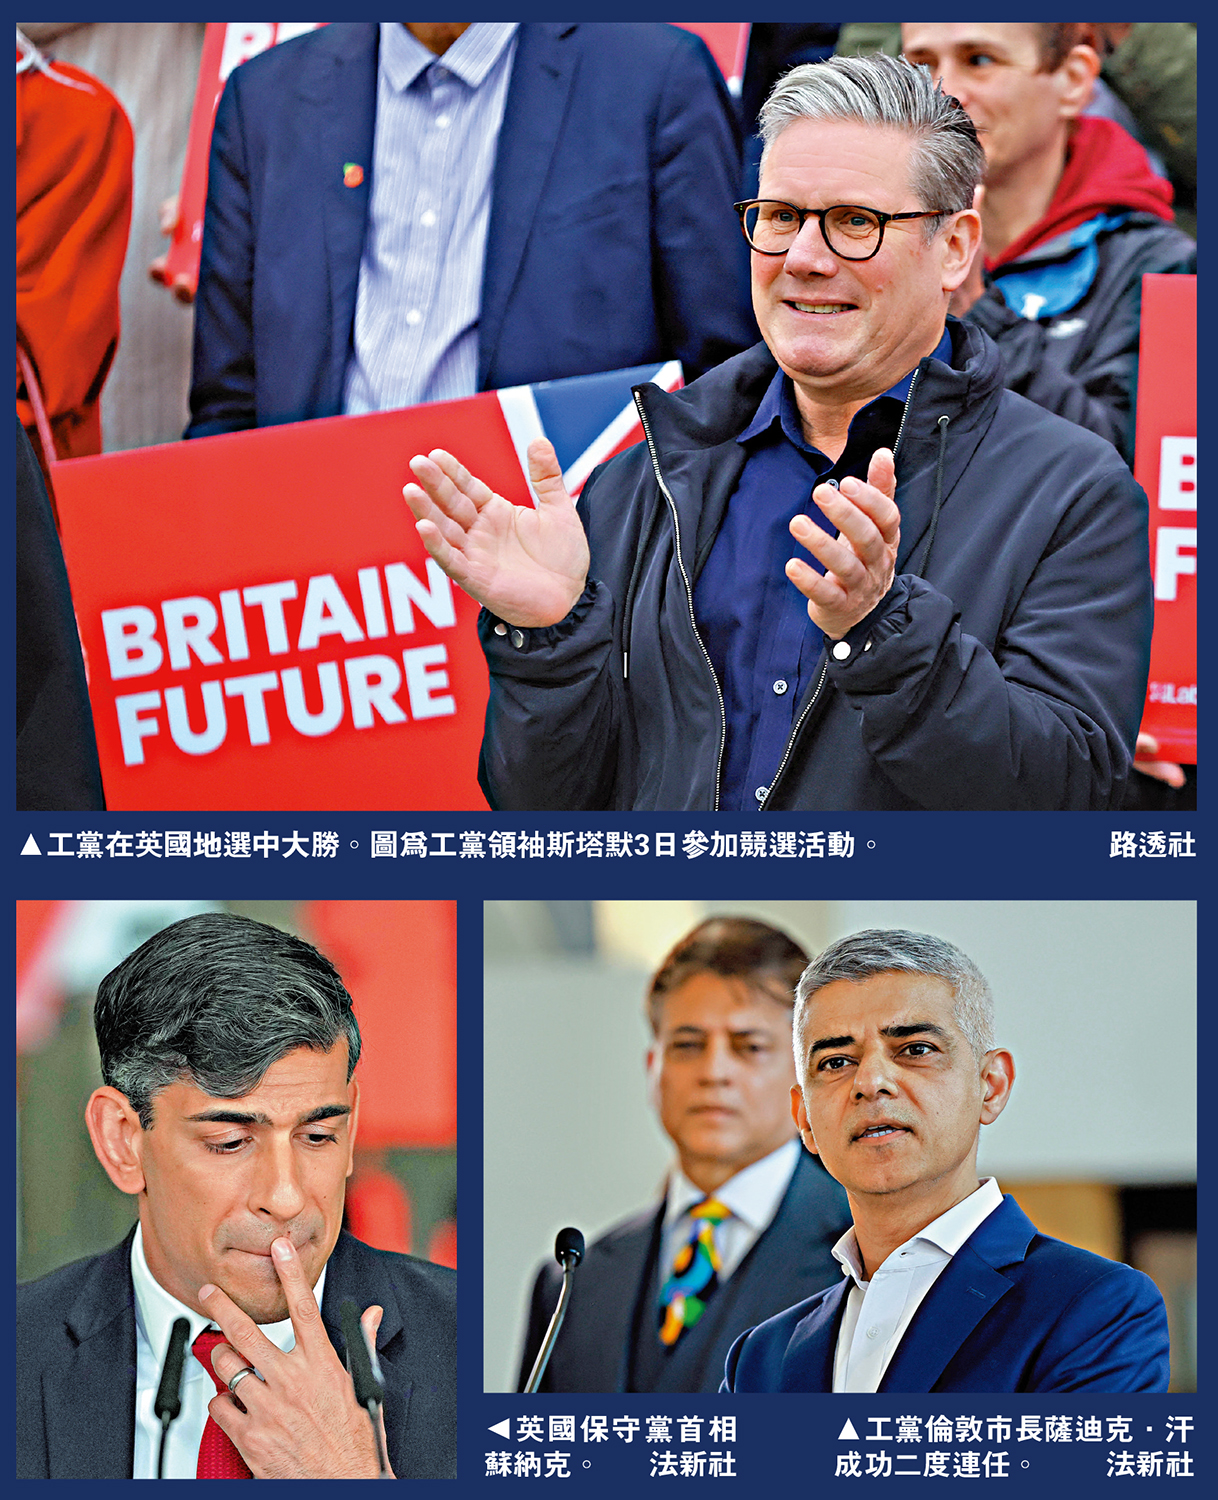 　　上圖：工黨在英國地選中大勝。圖為工黨領袖斯塔默3日參加競選活動。\路透社；左下圖：英國保守黨首相蘇納克。右下圖：工黨倫敦市長薩迪克·汗成功二度連任。\法新社